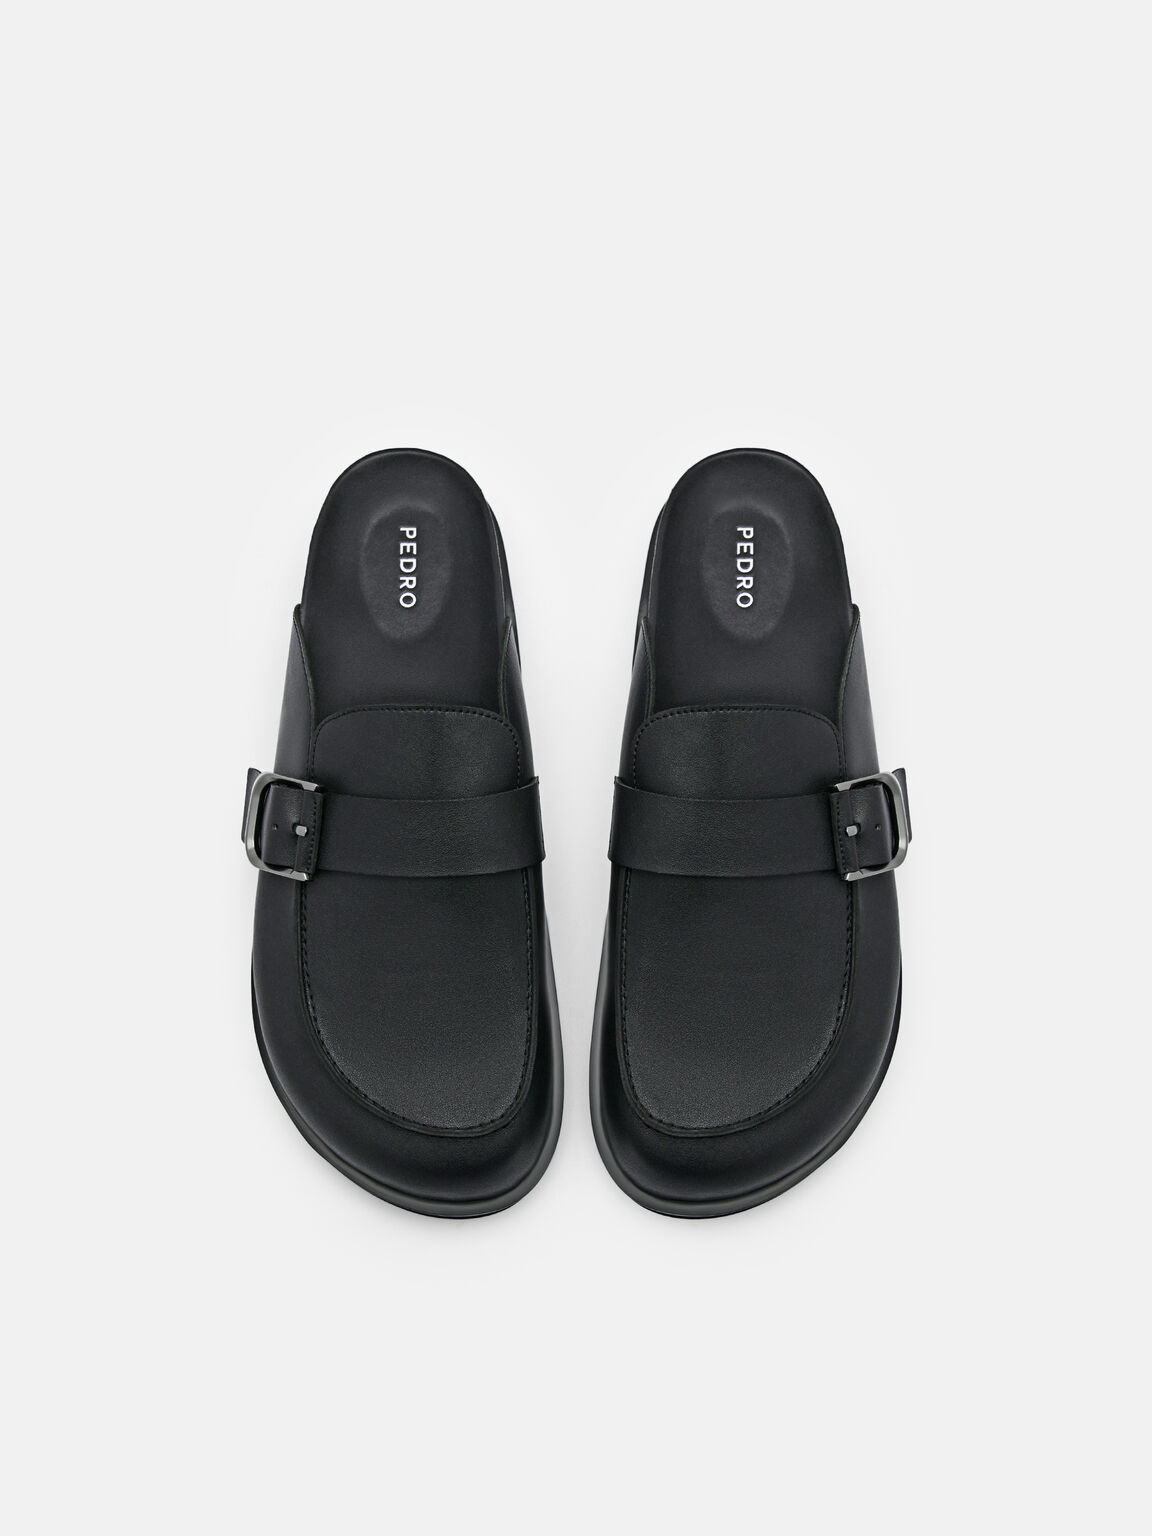 Men's Helix Slip-On Sandals, Black, hi-res